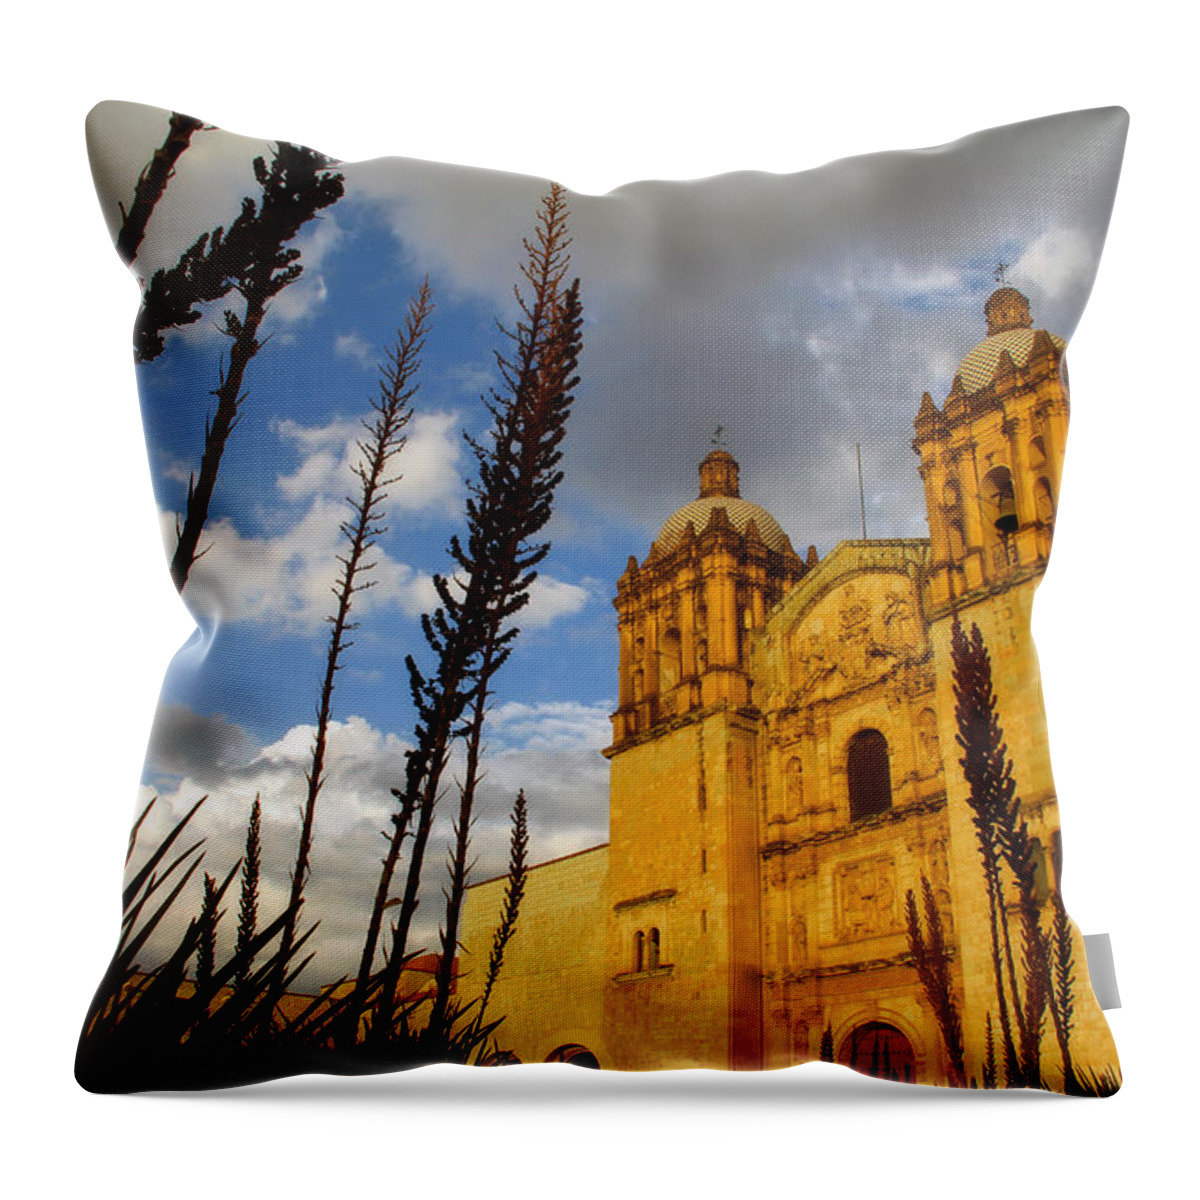 Santo Domingo @ Oaxaca Mexico Throw Pillow featuring the photograph Oaxaca Mexico #6 by Jim McCullaugh